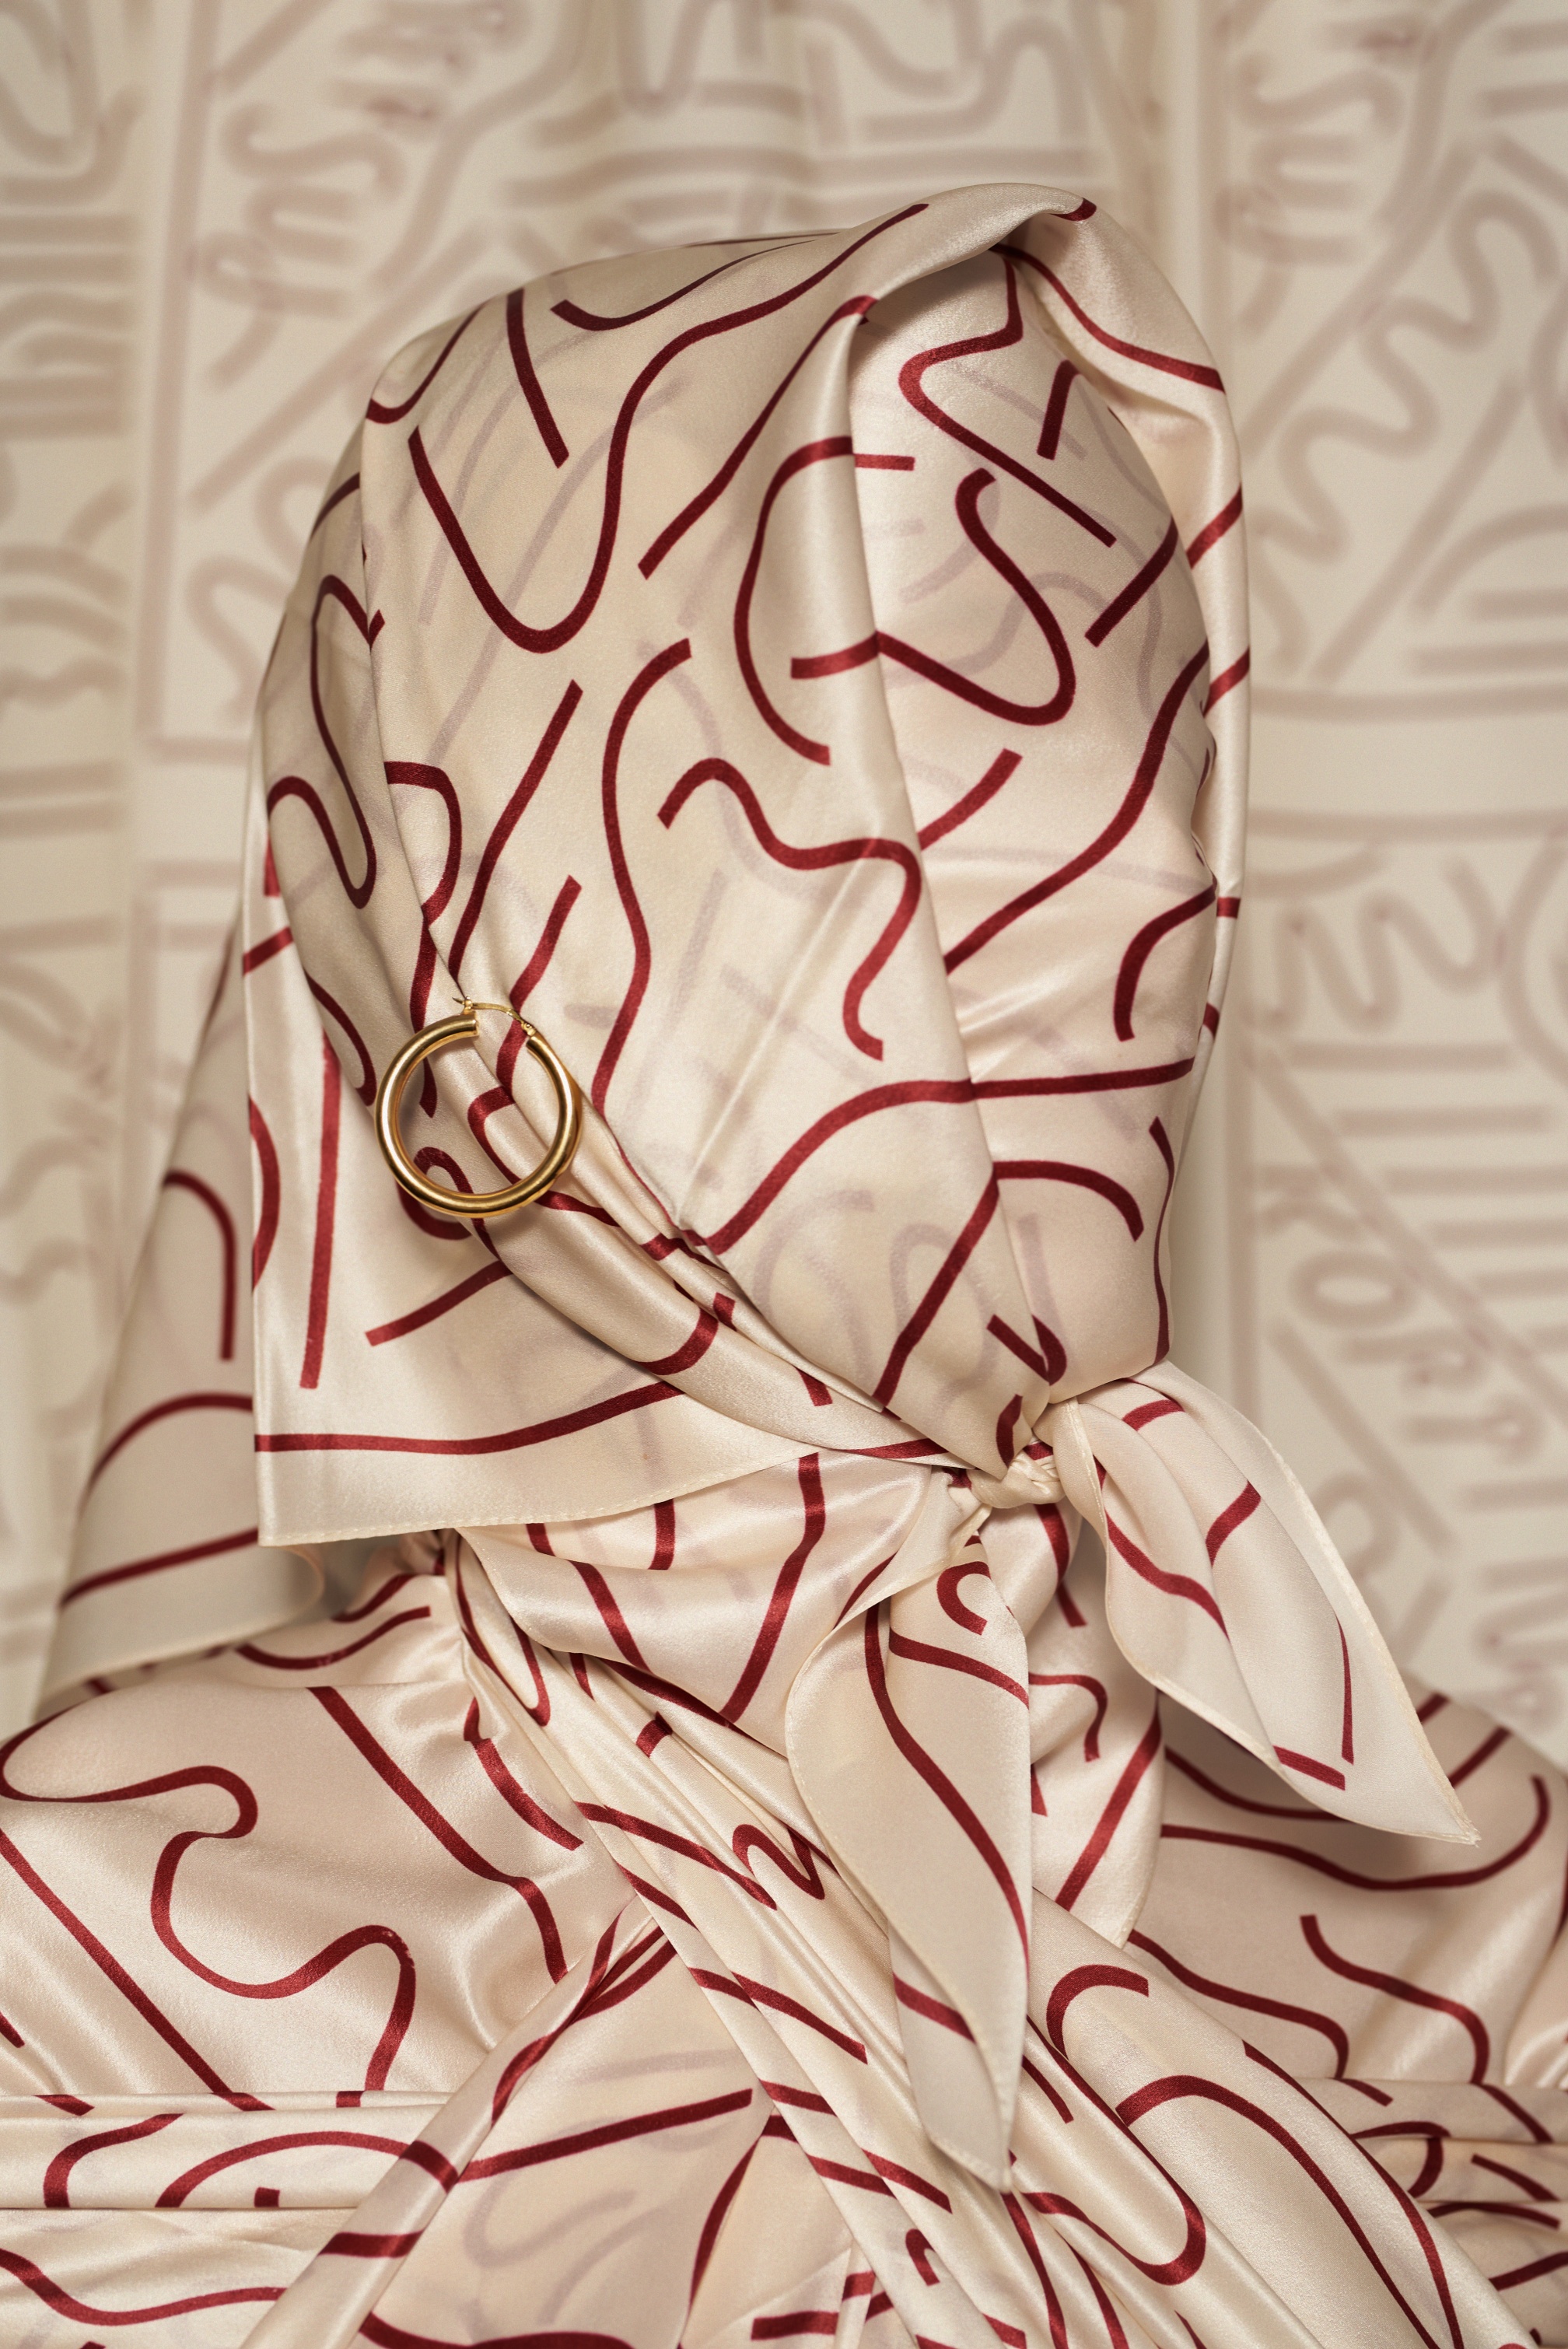 KOPI silk scarves 2021 styled by Kas Kryst